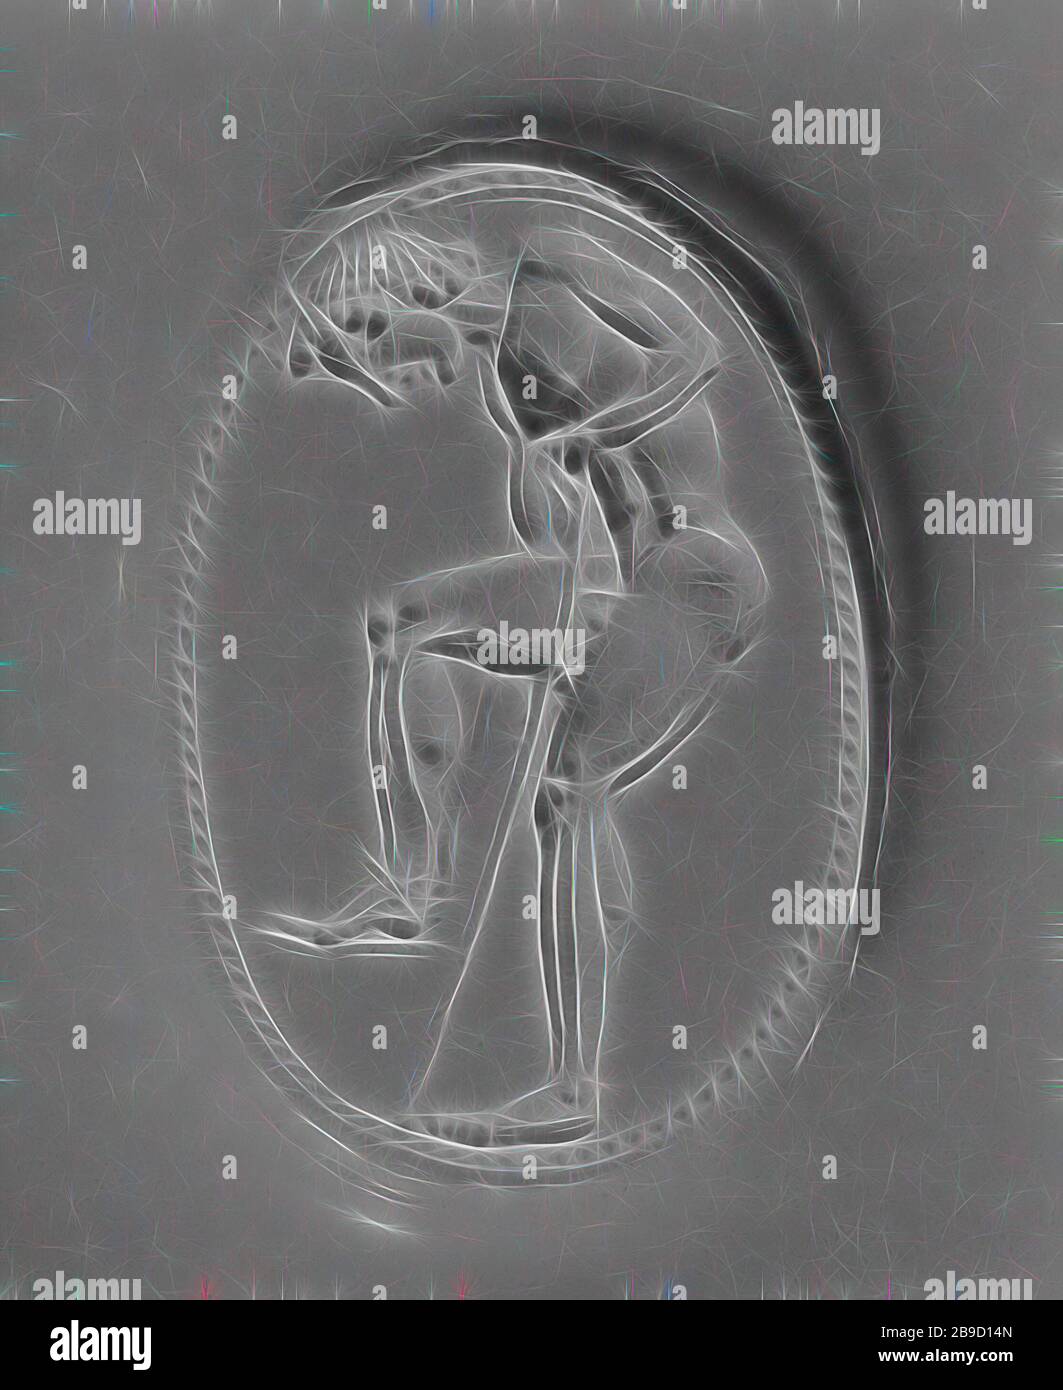 GEM ist mit einem Sportler graviert, der sein Sandal, das Epimenes (Griechisch, aktiv ca. 500 v. Chr.), Kykladen, Griechenland, ca. 500 B.C, Carnelian, 1,6 × 1 × 0,8 cm (5,8 × 3,8 × 5,16 Zoll, von Gibon neu vorgestellt, Design von warmem, fröhlichem Leuchten von Helligkeit und Lichtstrahlen. Klassische Kunst mit moderner Note neu erfunden. Fotografie, inspiriert vom Futurismus, die dynamische Energie moderner Technologie, Bewegung, Geschwindigkeit und Kultur revolutionieren. Stockfoto